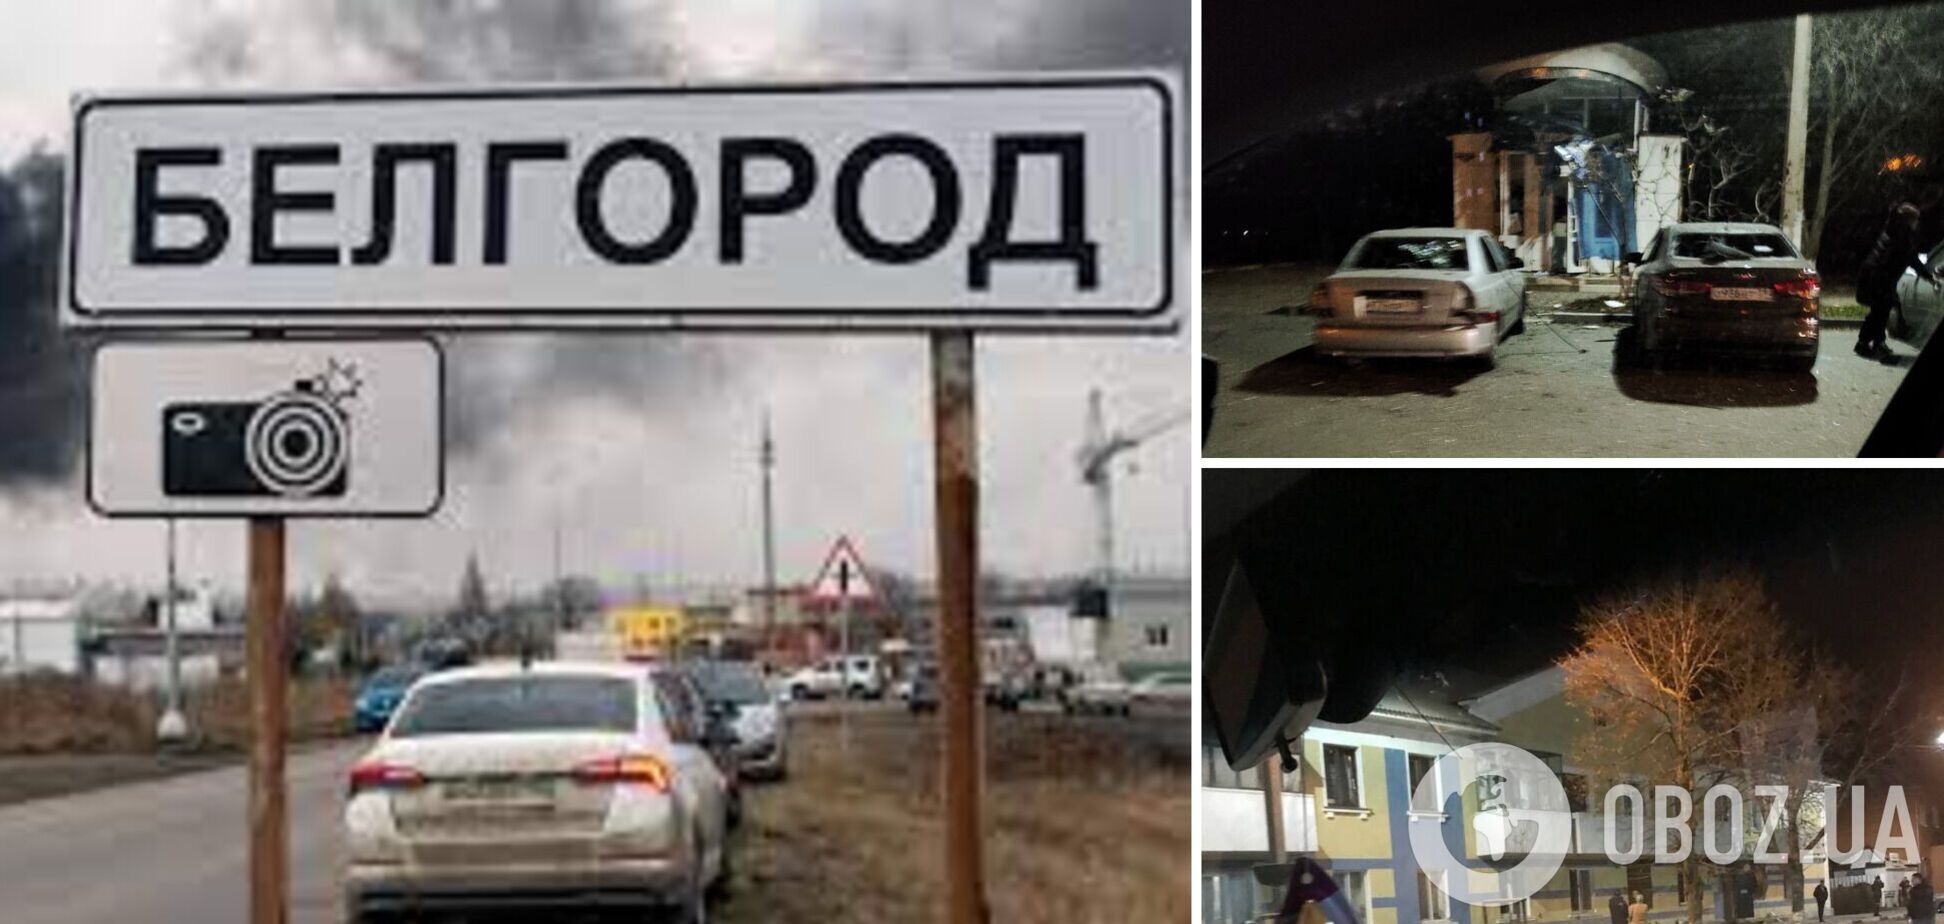 Одна из ракет осталась в России? В Белгородской области погибли два человека и трое получили ранения. Фото и видео